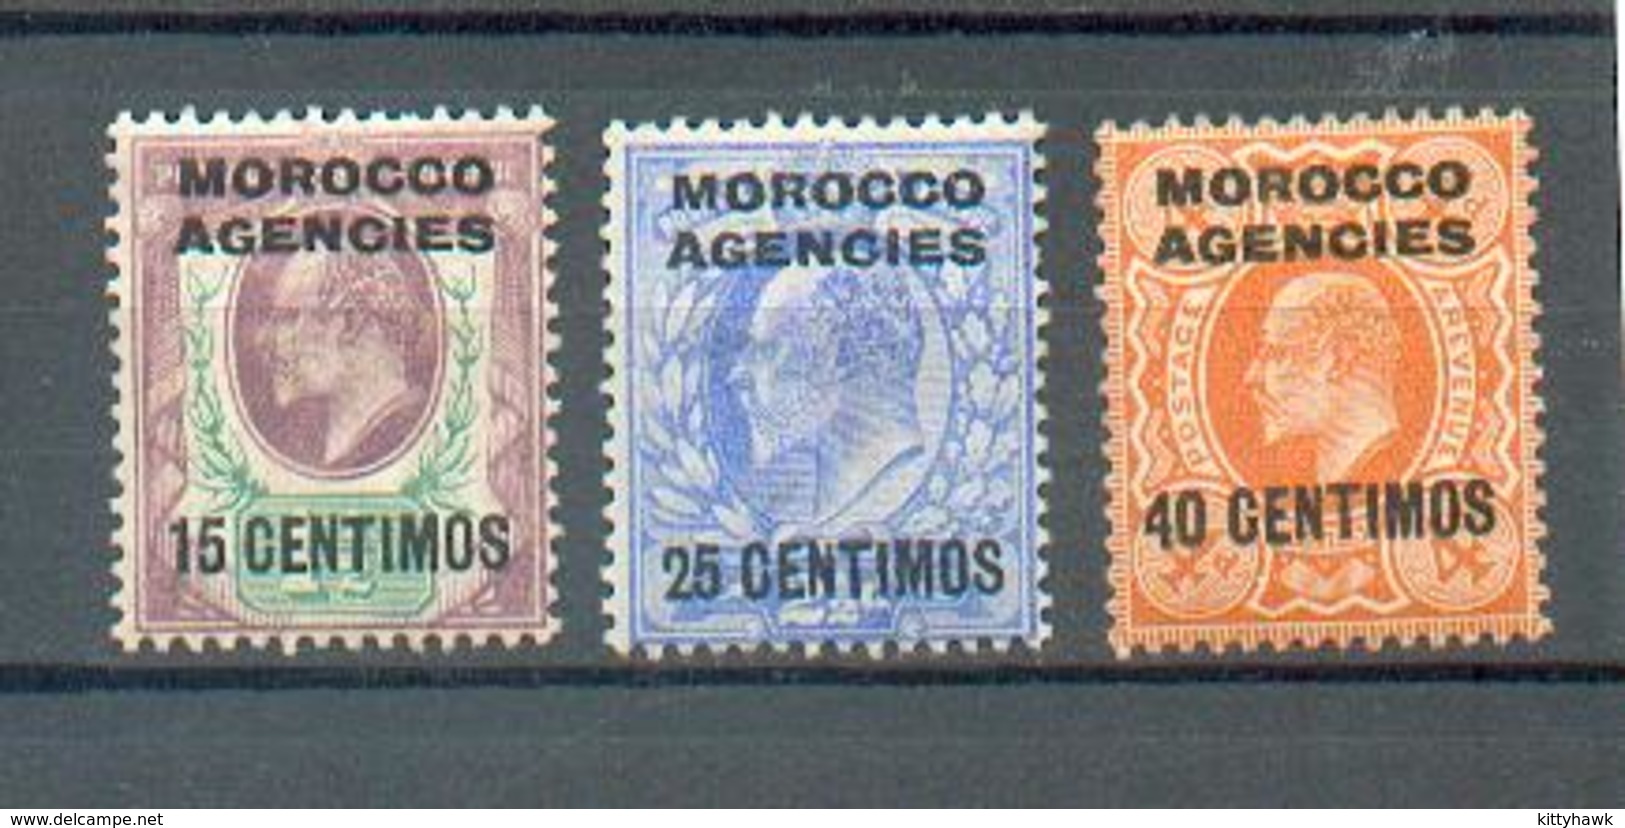 A 114 - MAROC - YT 25-27-28 A * - Charnières Complètes - Morocco Agencies / Tangier (...-1958)